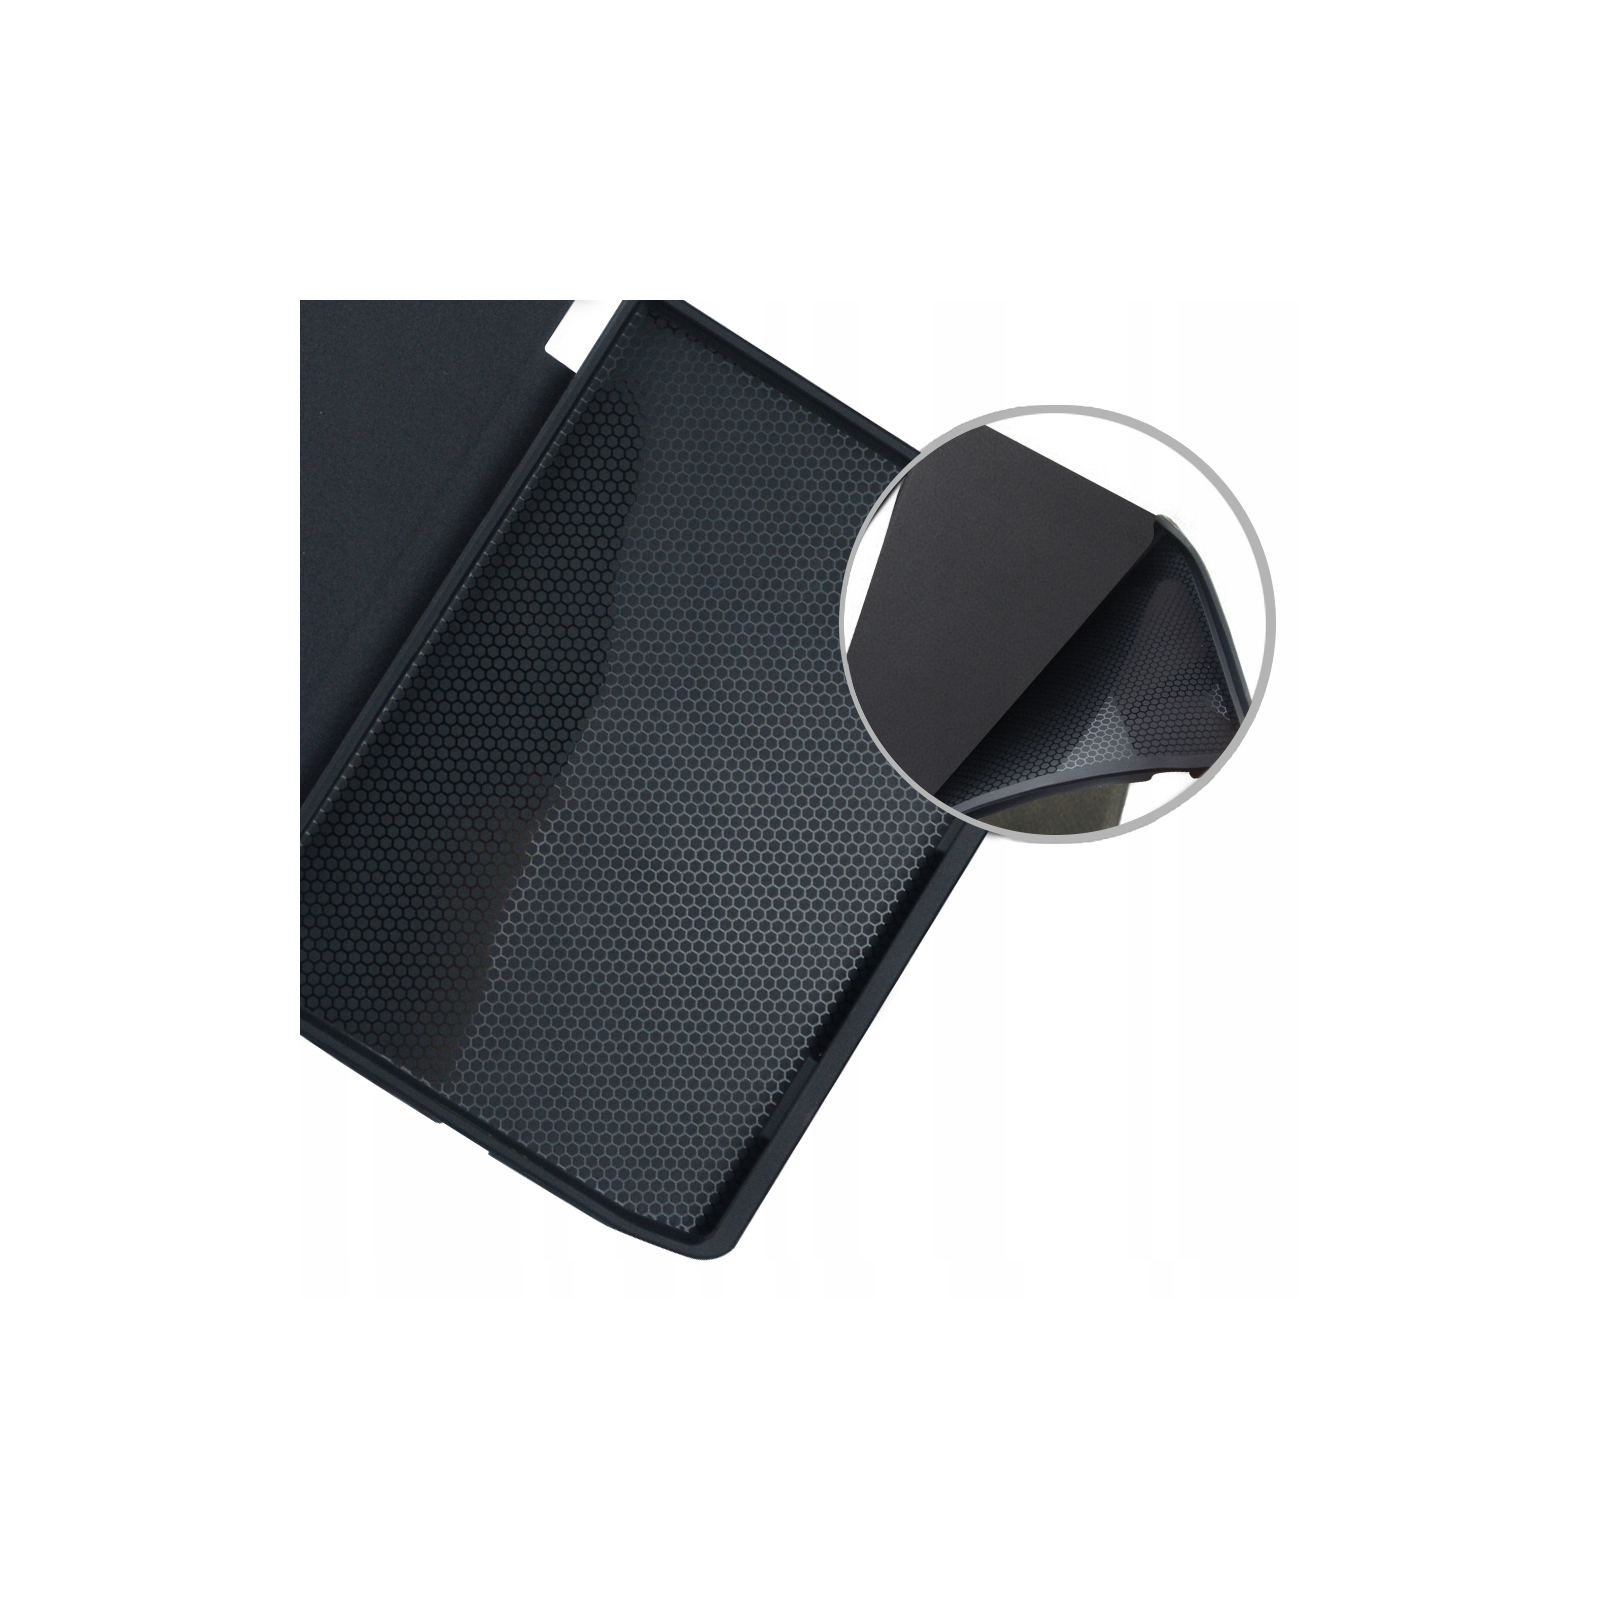 Чехол для электронной книги BeCover Smart Case PocketBook 629 Verse / 634 Verse Pro 6" Black (710450) изображение 3